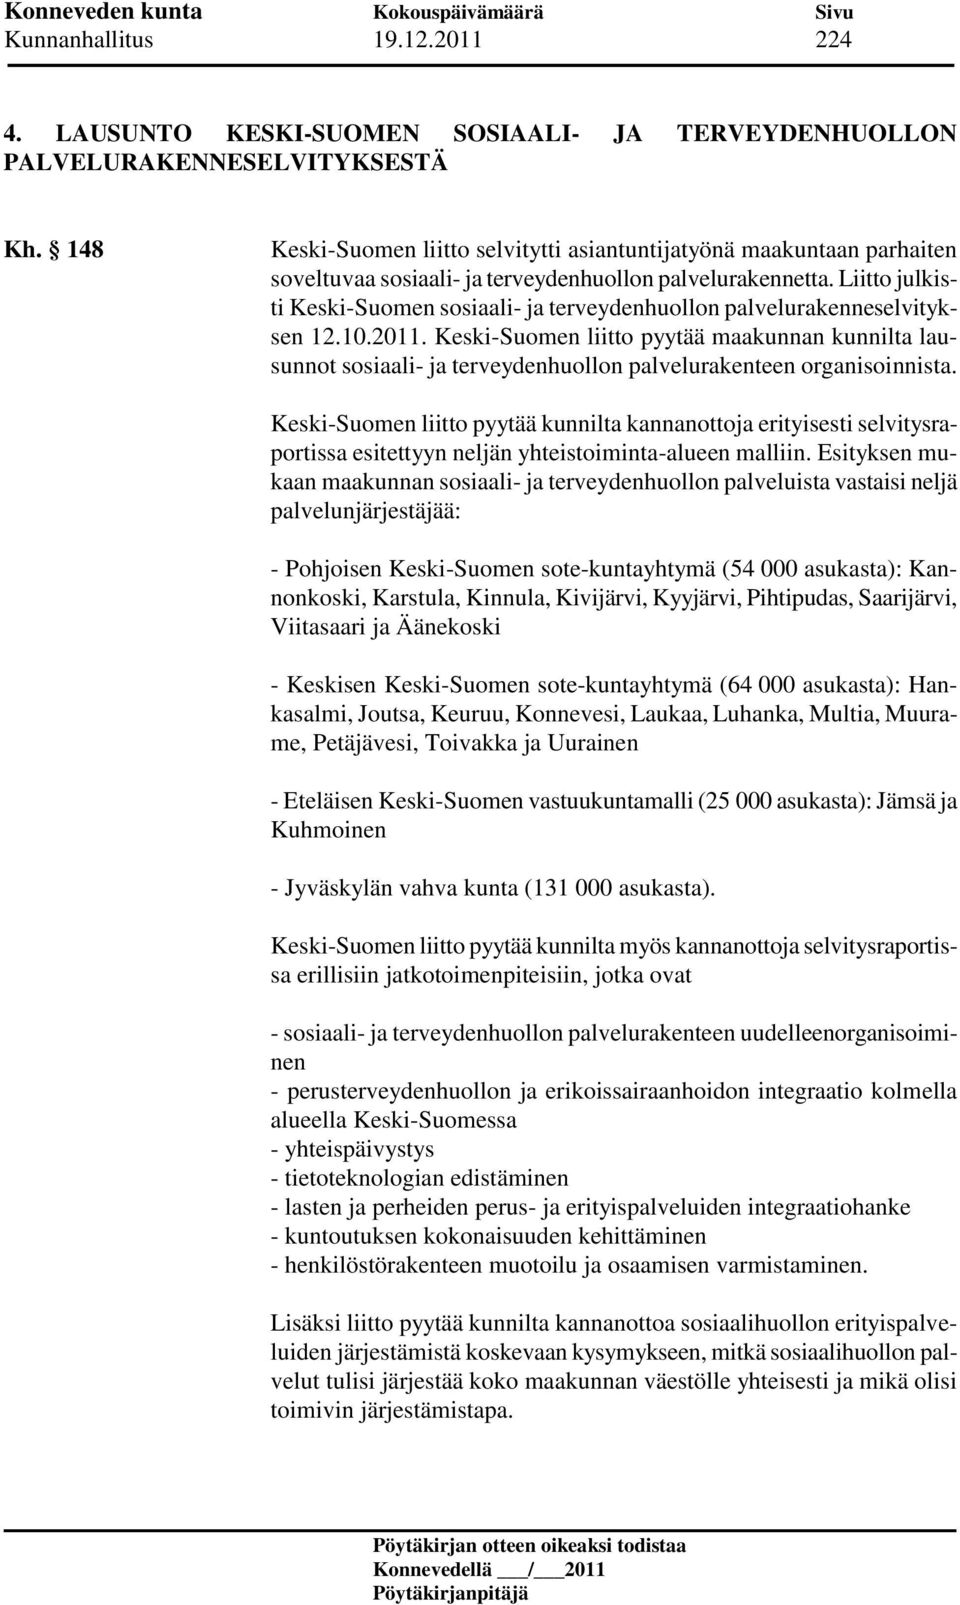 Liitto julkisti Keski-Suomen sosiaali- ja terveydenhuollon palvelurakenneselvityksen 12.10.2011.